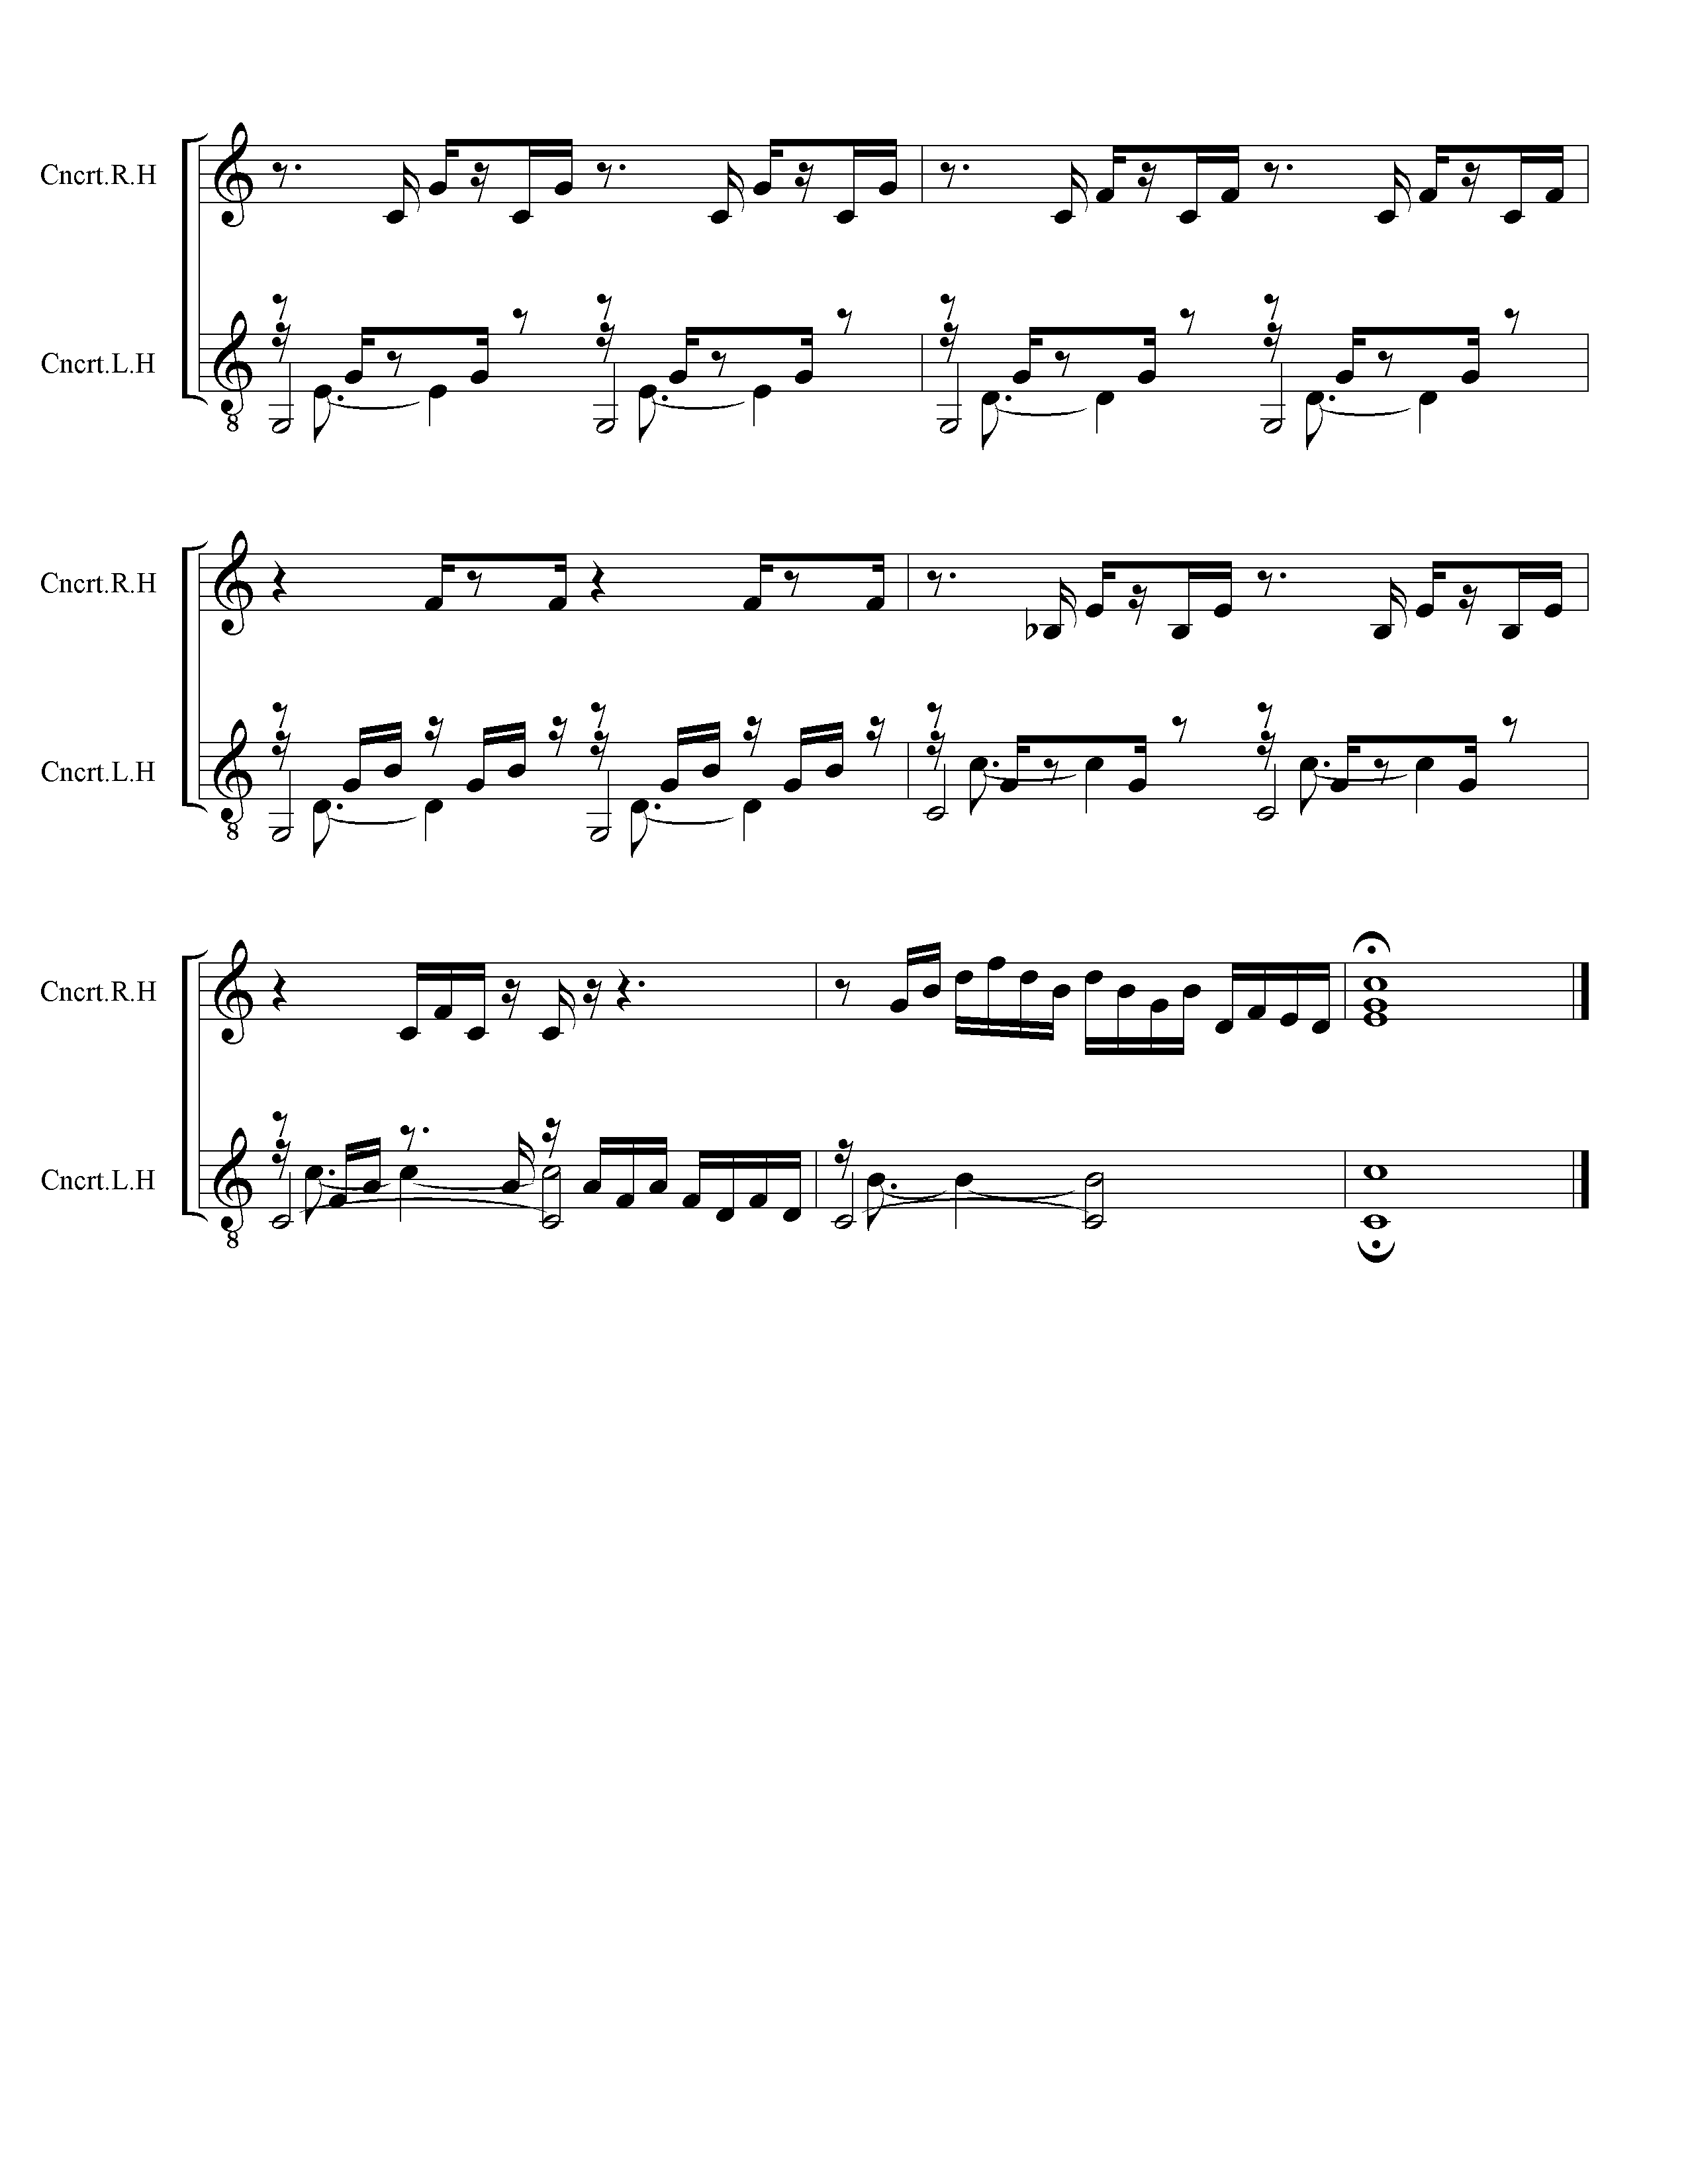 Page 4 (of 4) of J. S. Back Prelude 1 in C Major - Hayden Duet Arrangment